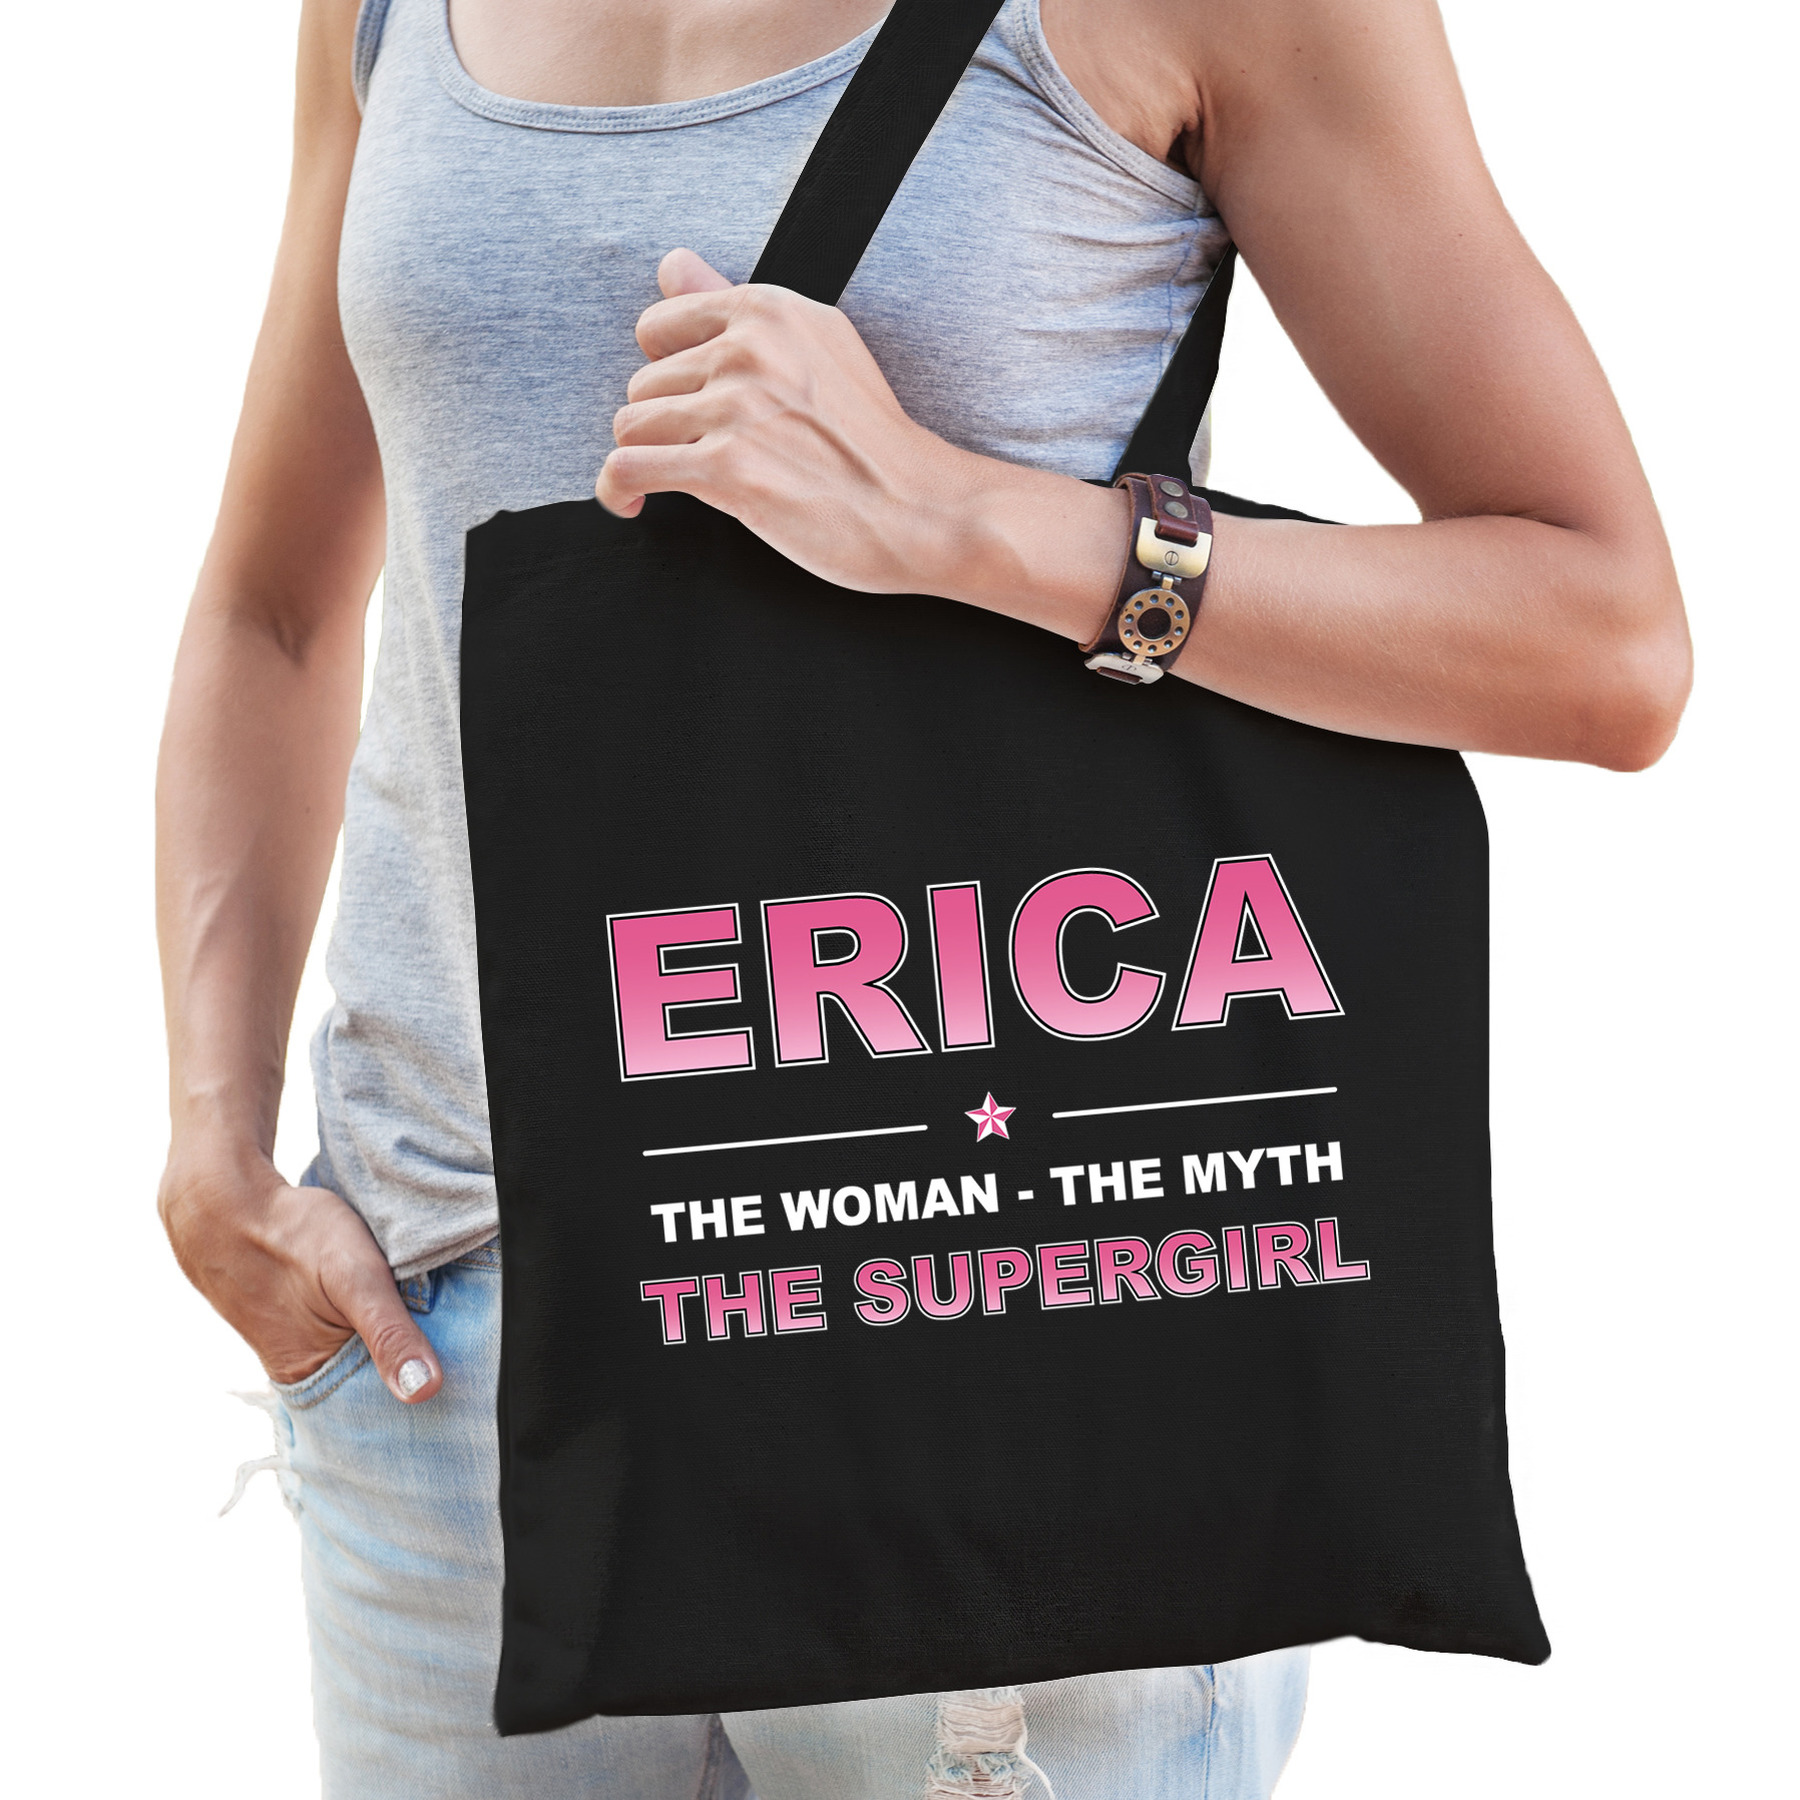 Naam Erica The women, The myth the supergirl tasje zwart Cadeau boodschappentasje